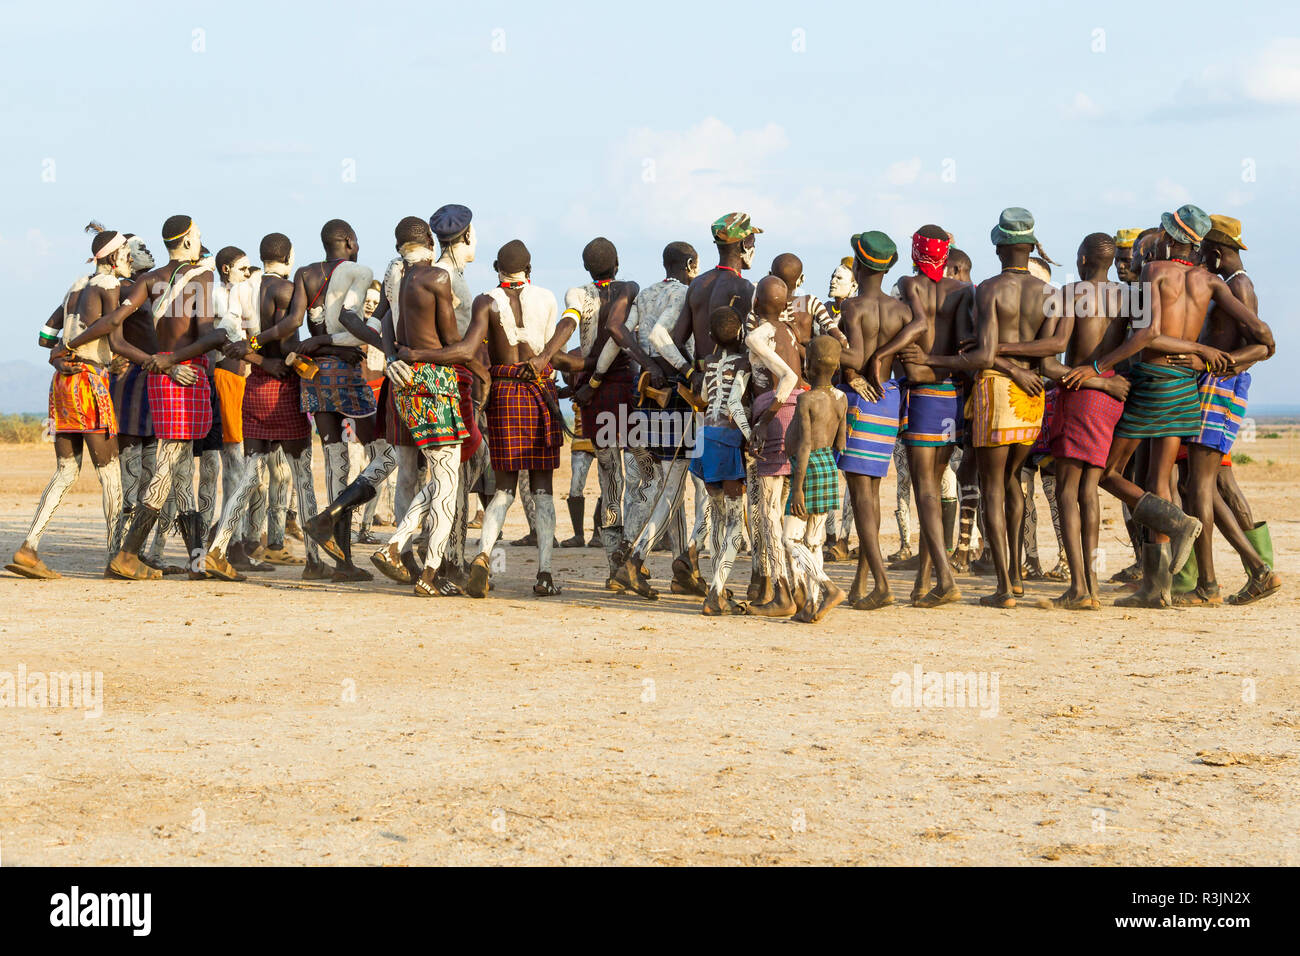 L'Afrique, l'Ethiopie, le sud de la vallée de l'Omo, Tribu Nyangatom. Un groupe d'hommes Nyangatom se préparent à la danse. Banque D'Images